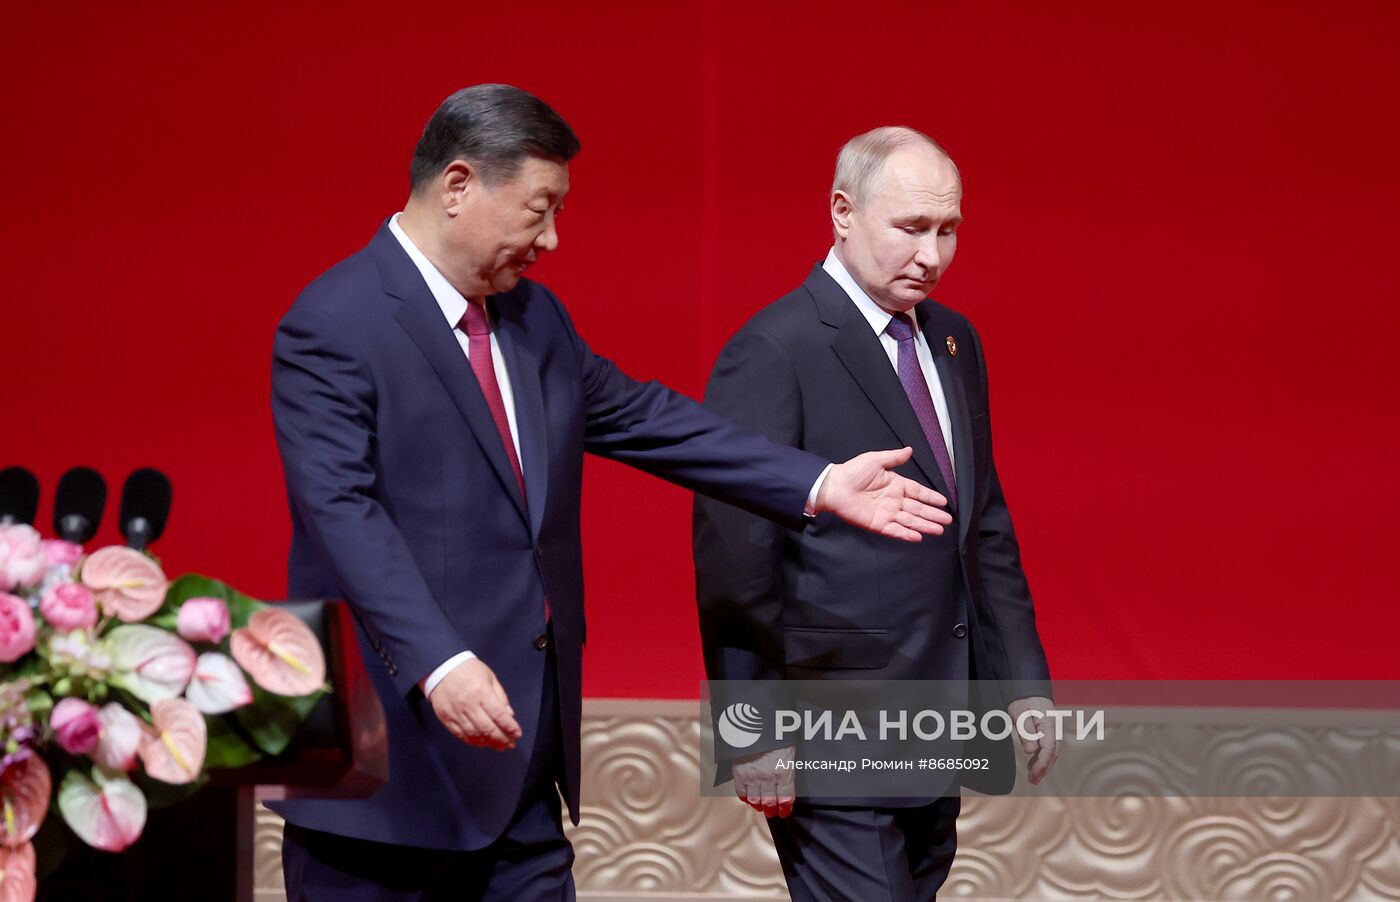 Государственный визит президента Владимира Путина в Китай